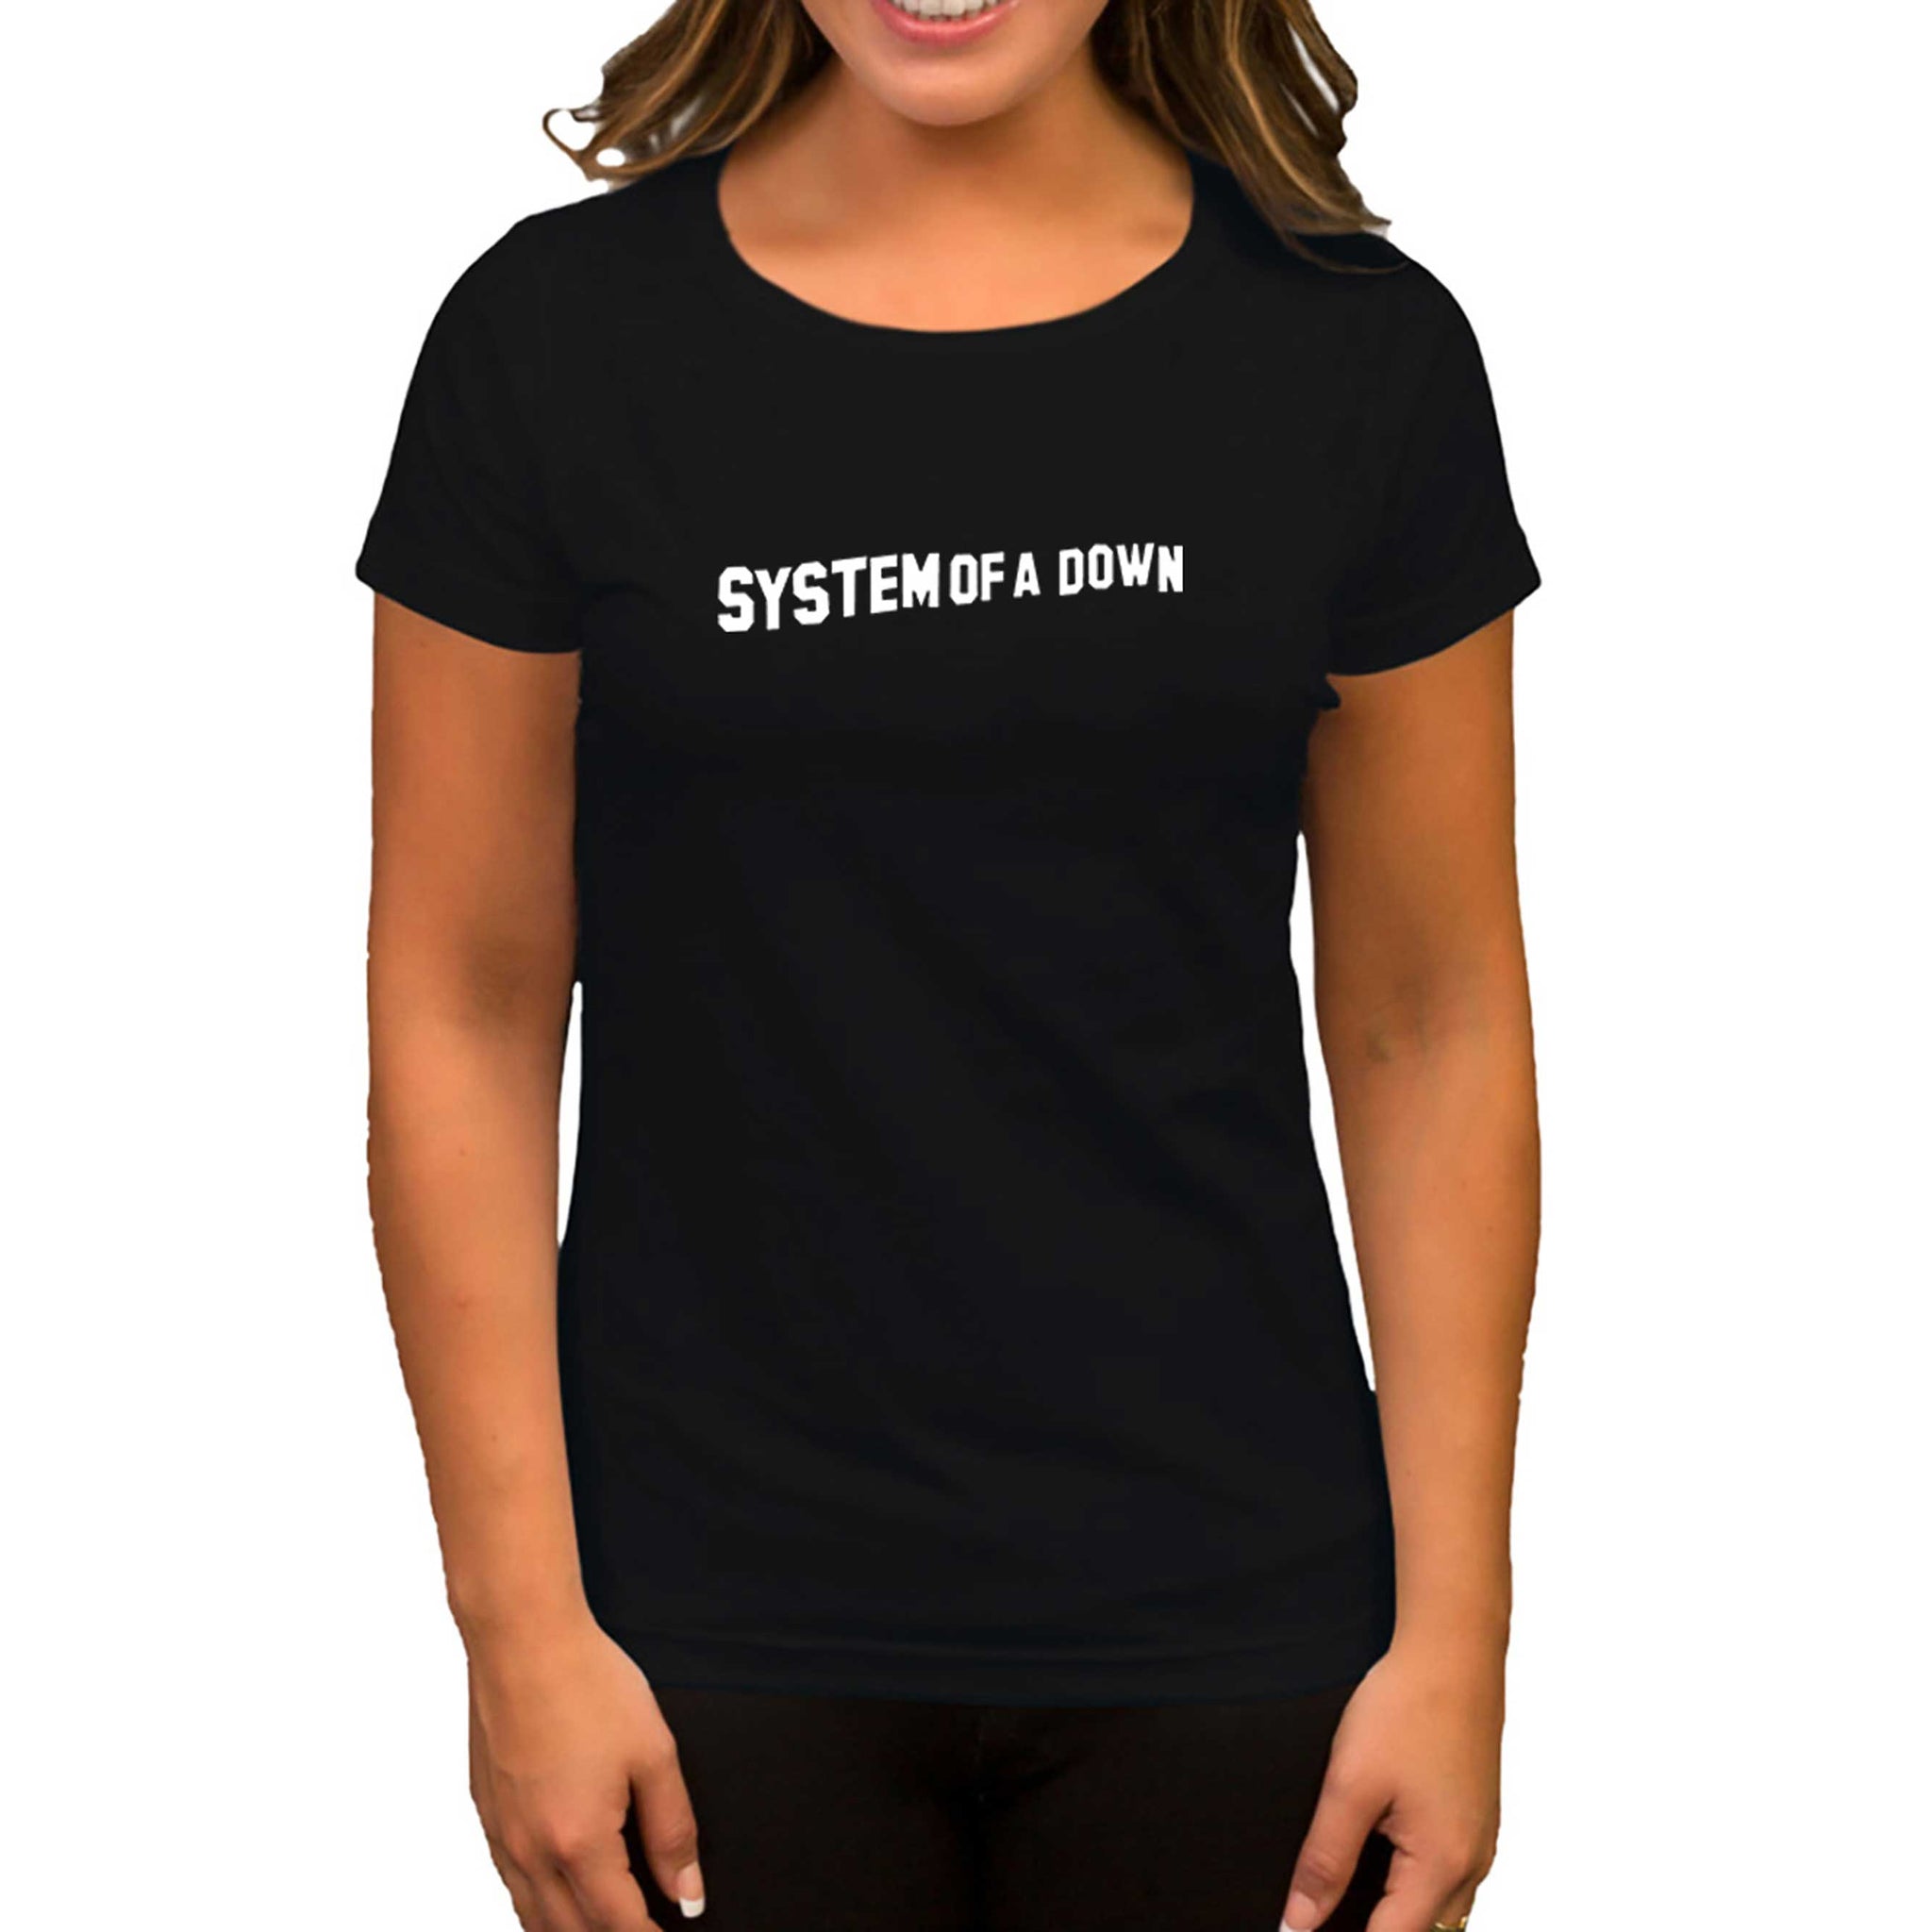 System of a Down Yazı Siyah Kadın Tişört